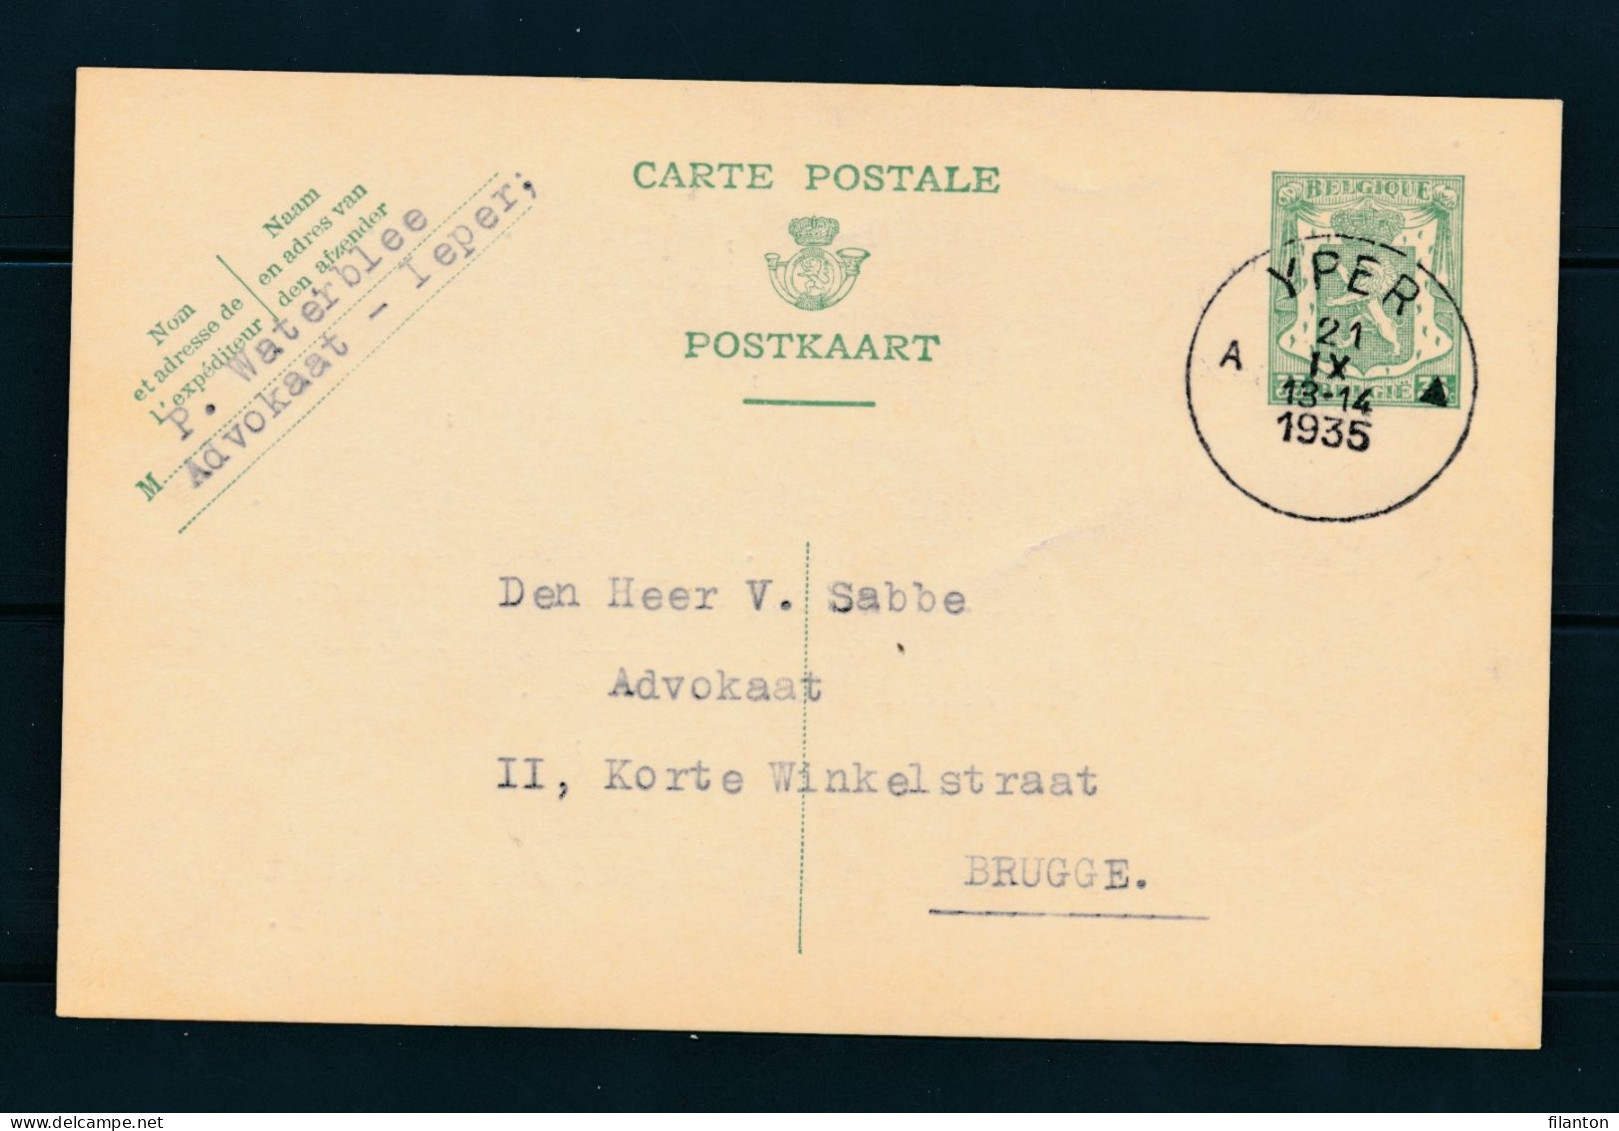 PWS - Cachet "YPER Litt. A ▲" Dd. 21-09-1935 - (ref.1726) - Postkarten 1934-1951